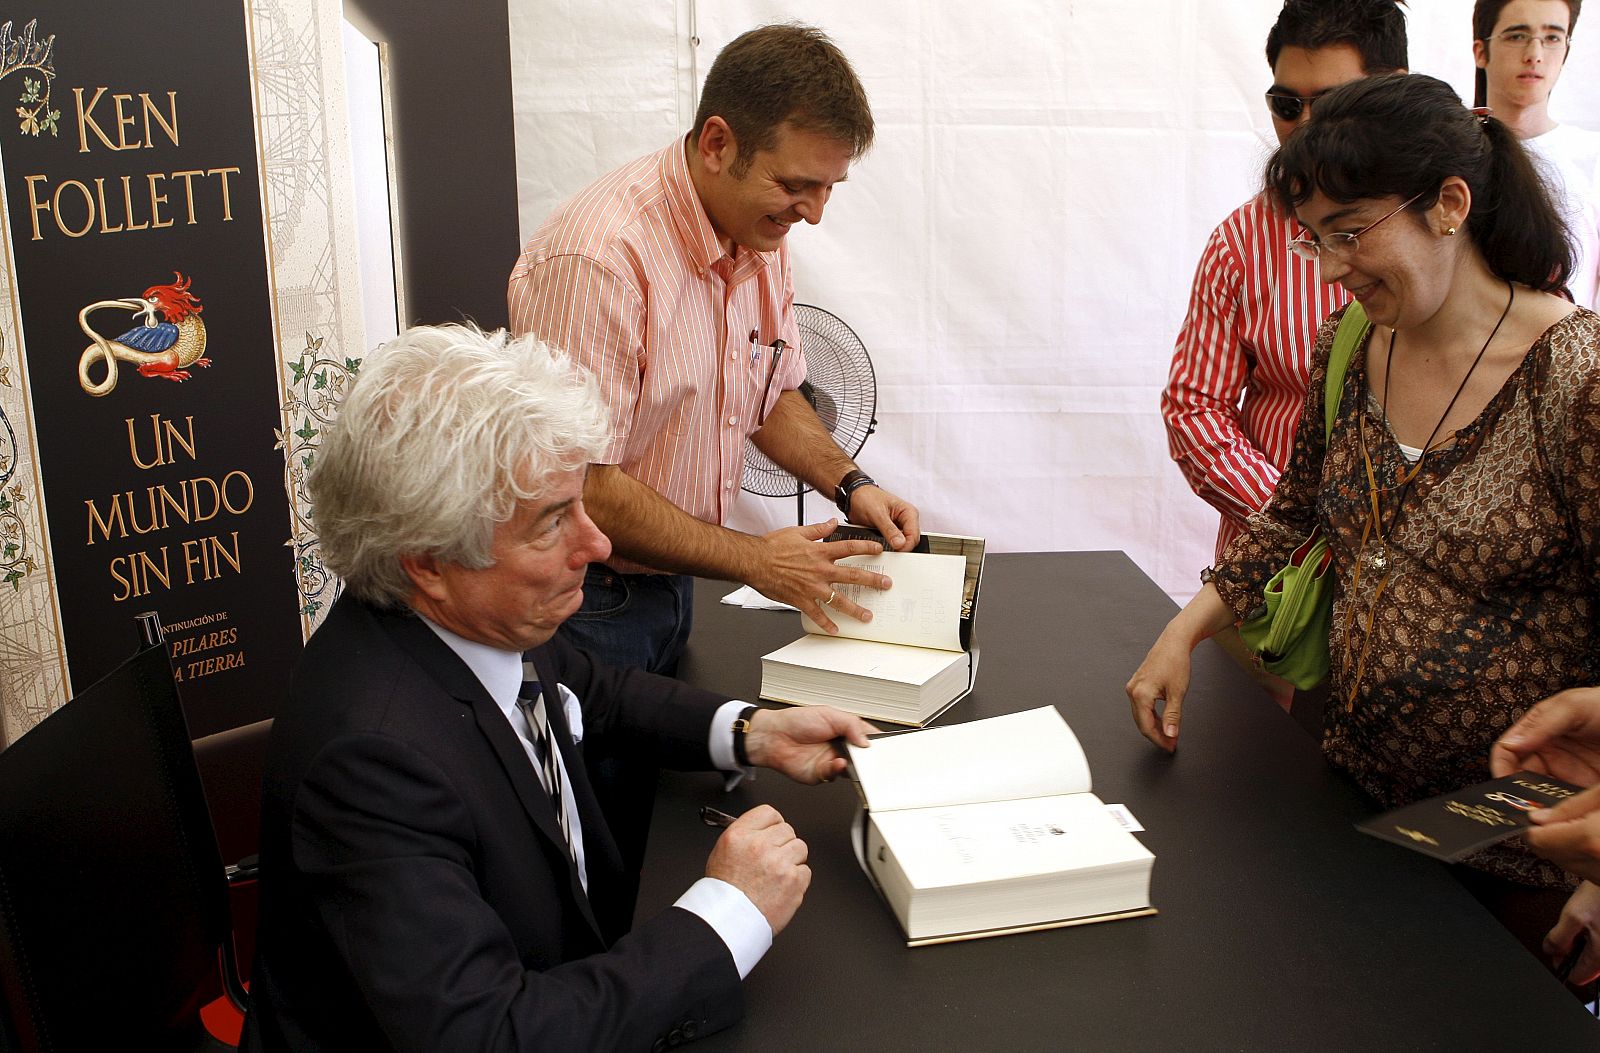 El escritor galés Ken Follet firma un ejemplar de su última novela, "Un mundo sin fin", a una lectora durante la firma de libros que ha realizado en la Feria del Libro de Madrid.